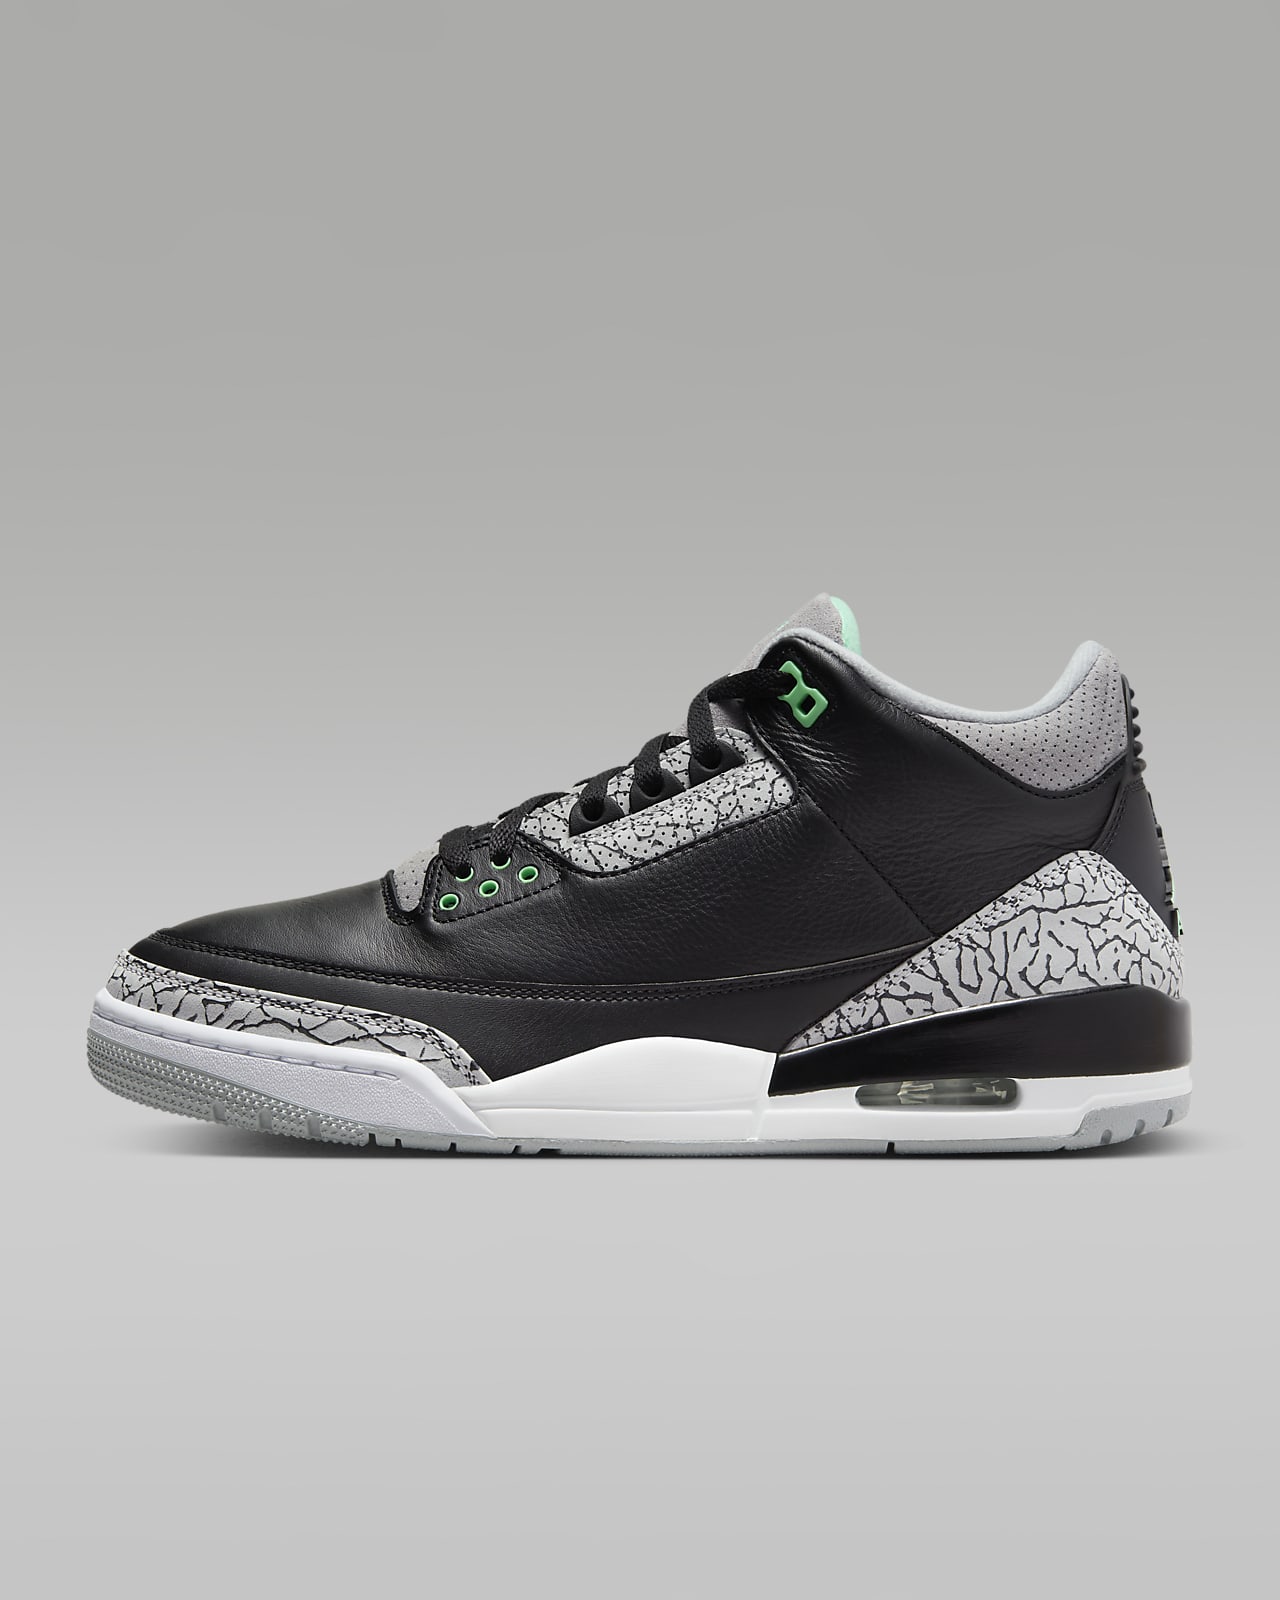 Air Jordan 3 Retro "Green Glow" Men's Shoes